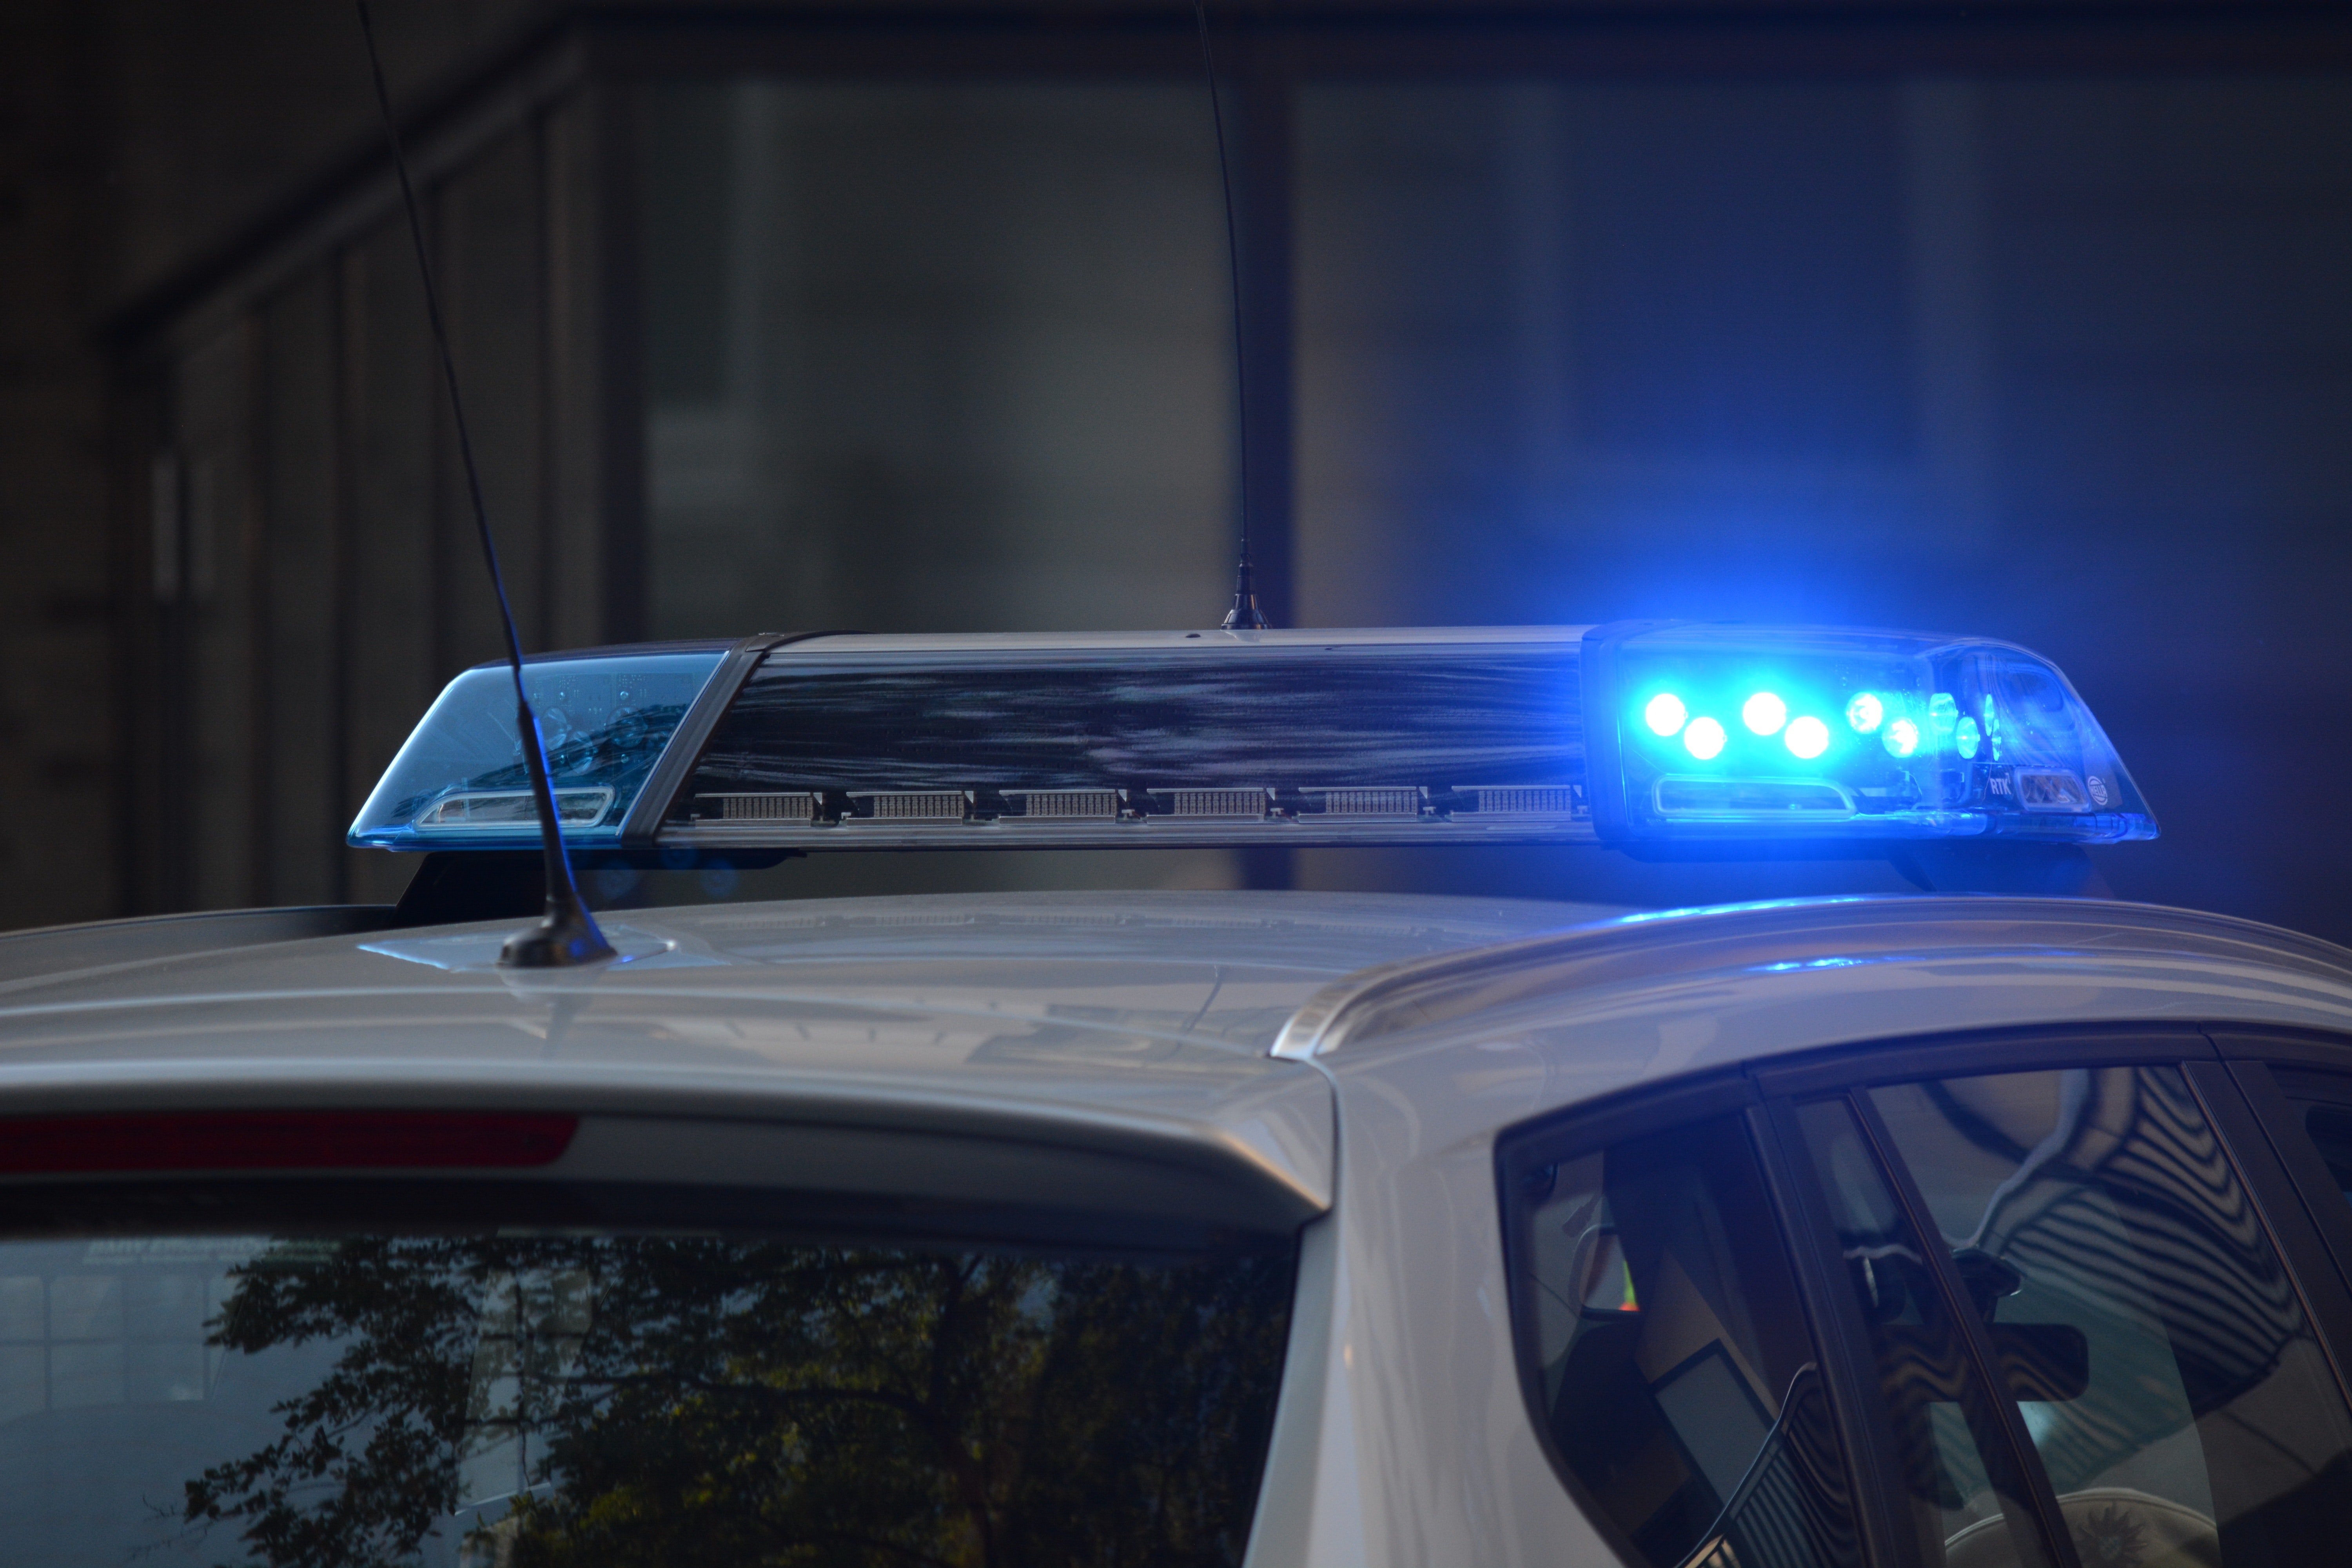 Polizeiauto mit Blaulicht | Quelle: Pexels